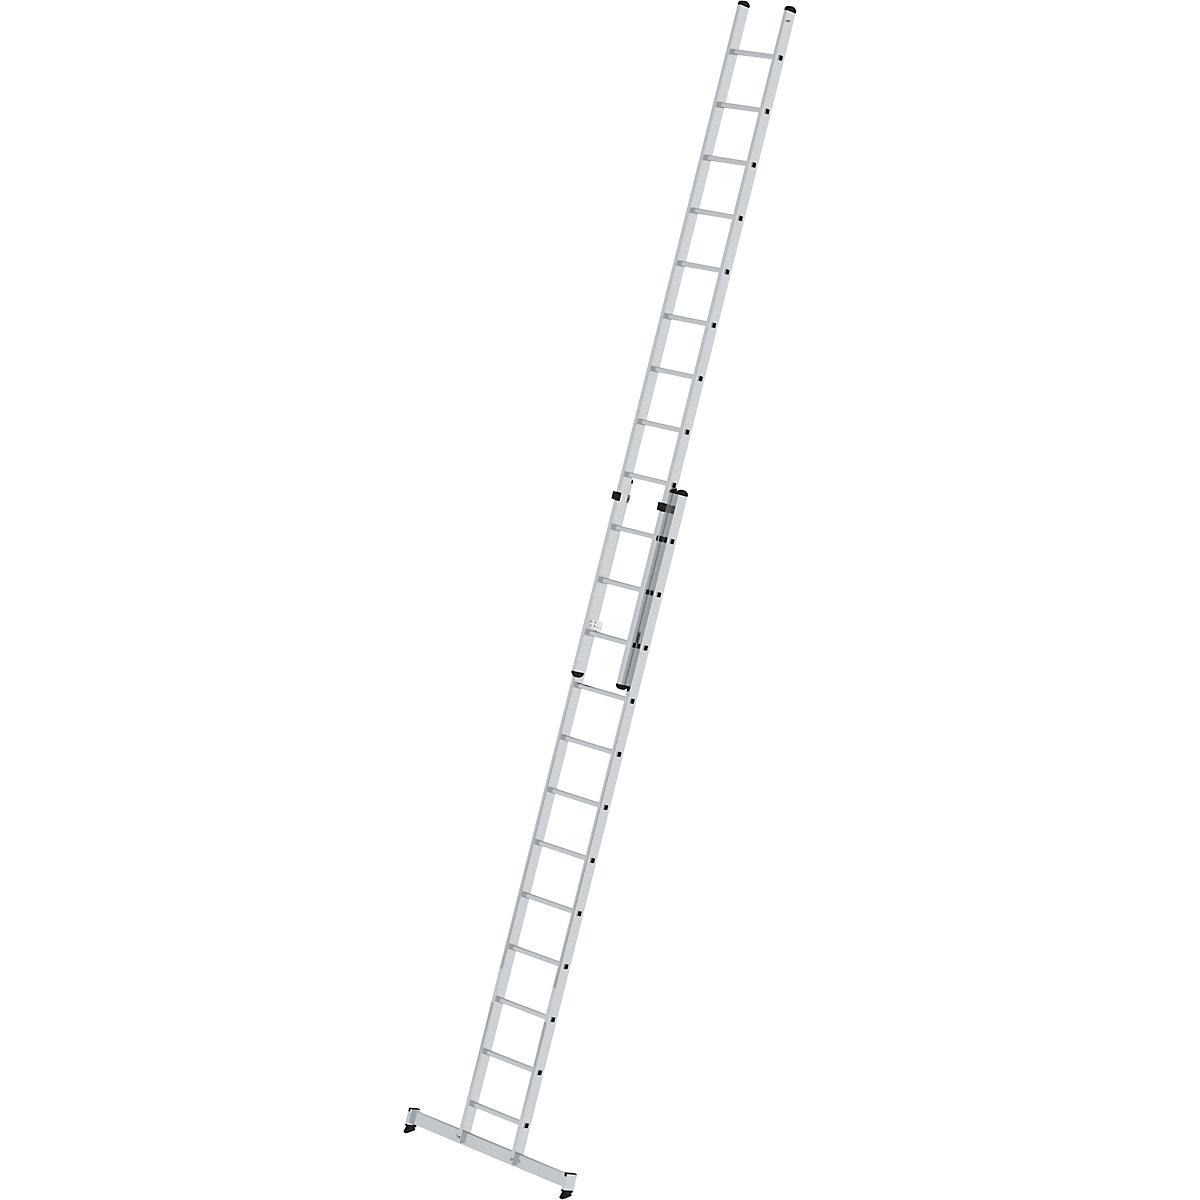 Escalera de mano de altura regulable – MUNK, escalera extensible de 2 tramos, 2 x 12 peldaños estrechos, con traviesa nivello®-9